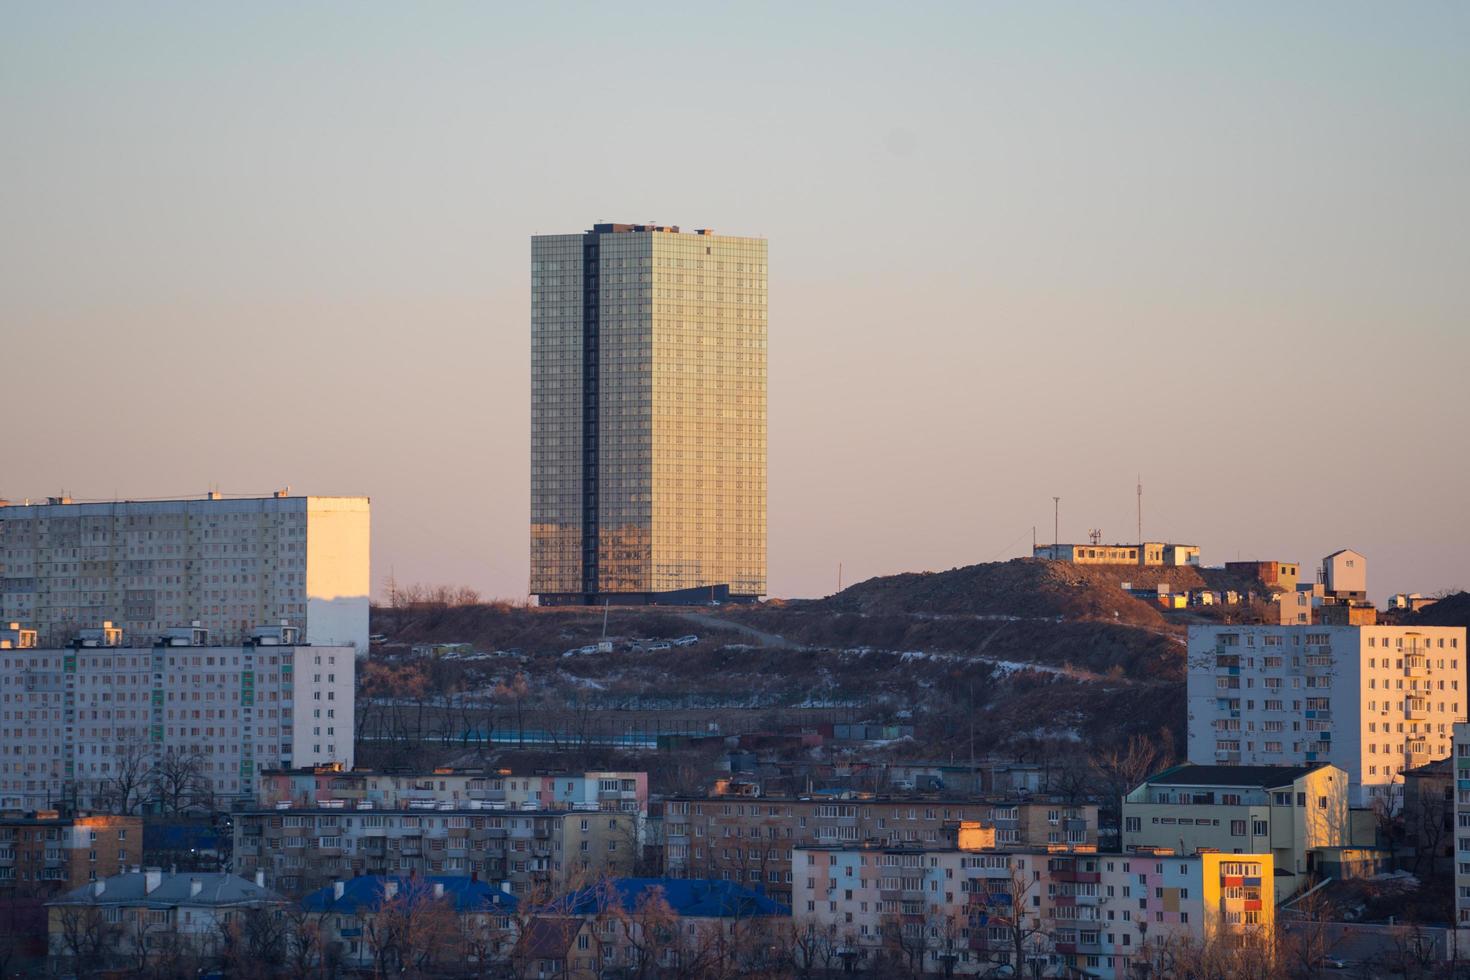 paisaje urbano con edificios residenciales. vladivostok, rusia foto